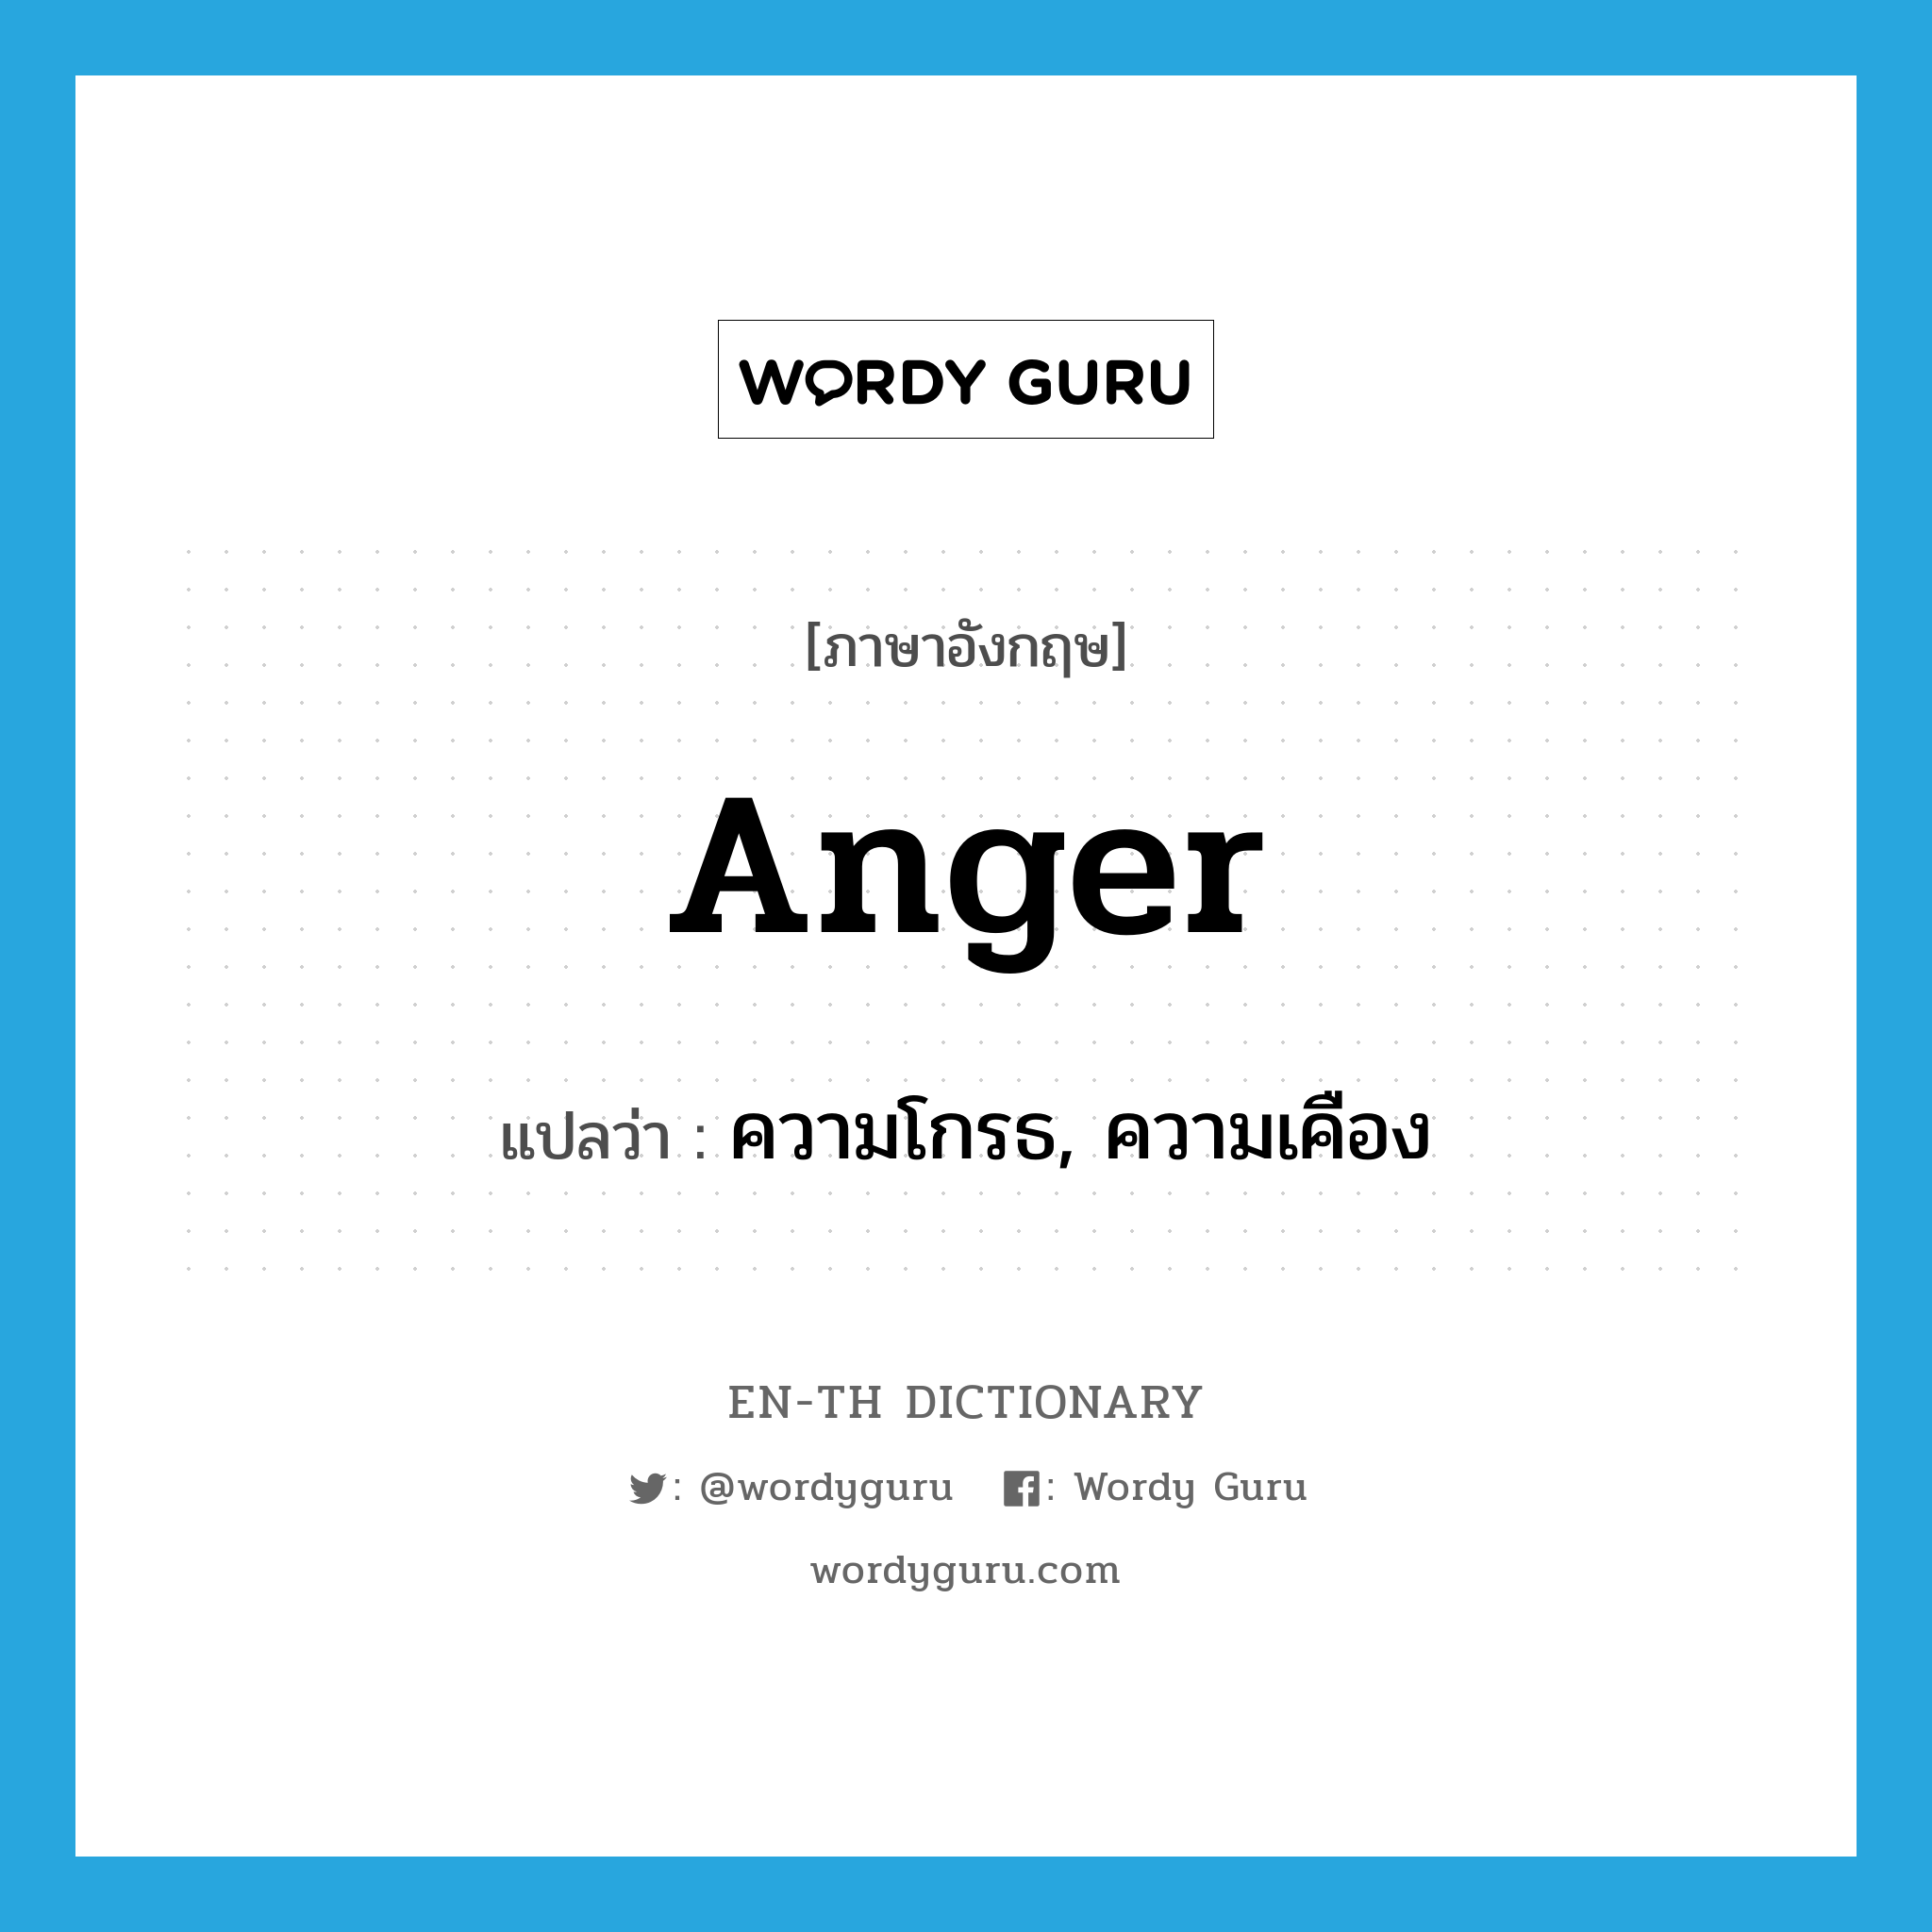 ความโกรธ, ความเคือง ภาษาอังกฤษ?, คำศัพท์ภาษาอังกฤษ ความโกรธ, ความเคือง แปลว่า anger ประเภท N หมวด N